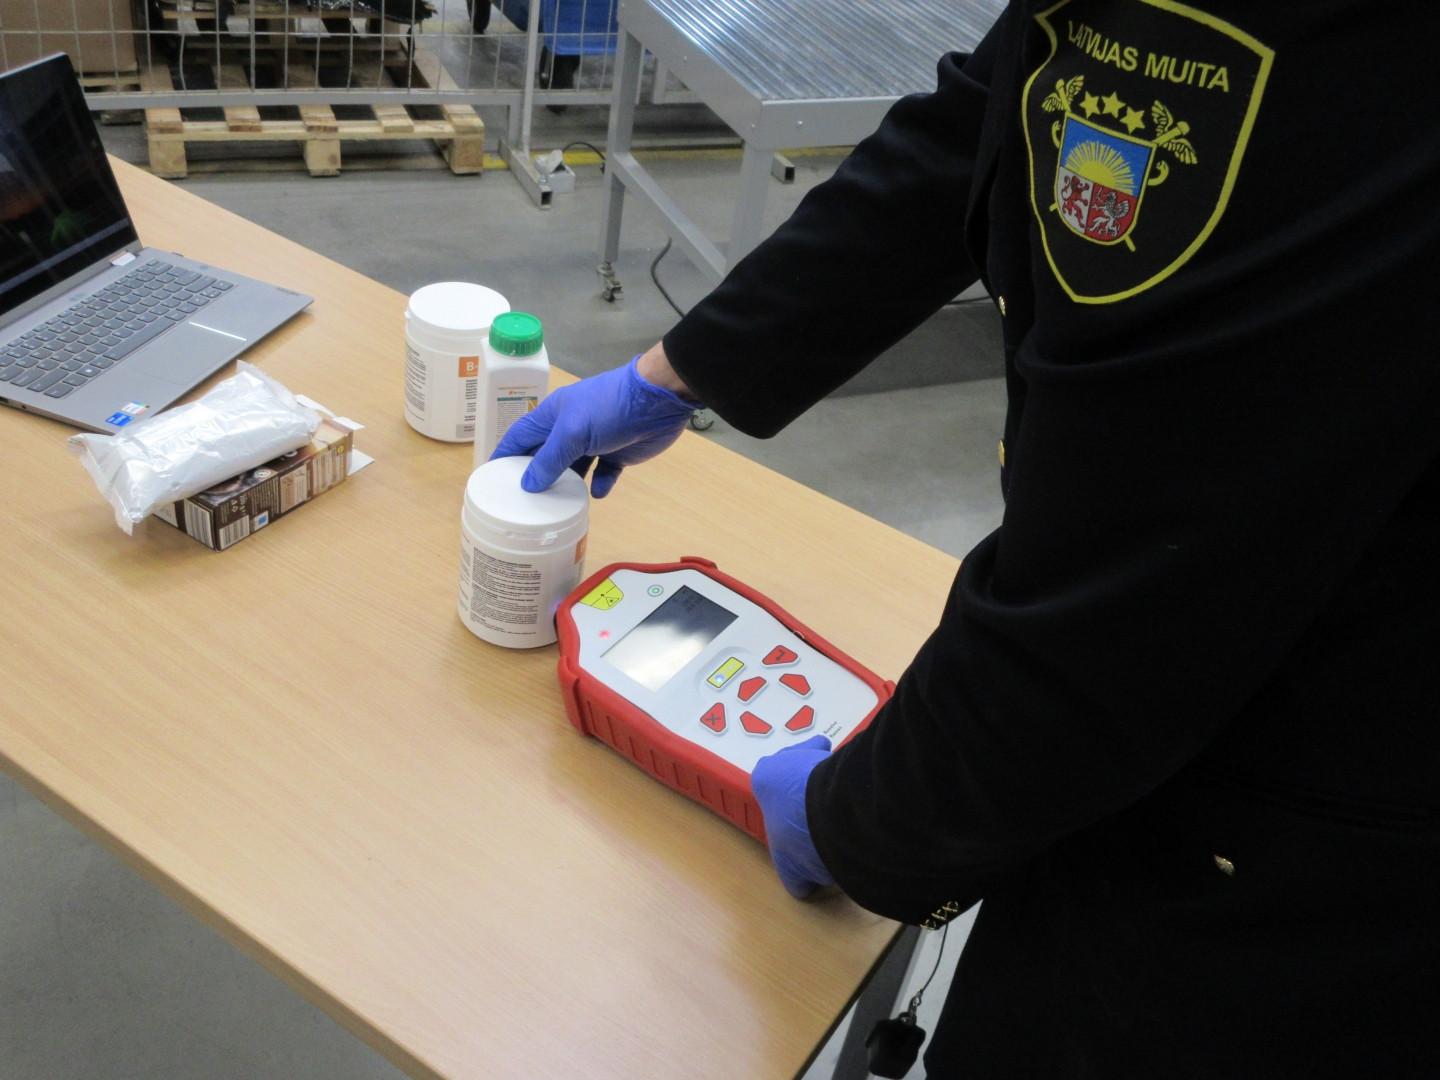 Foto: Latvijas Muita izmanto iekārtu pārbaudei